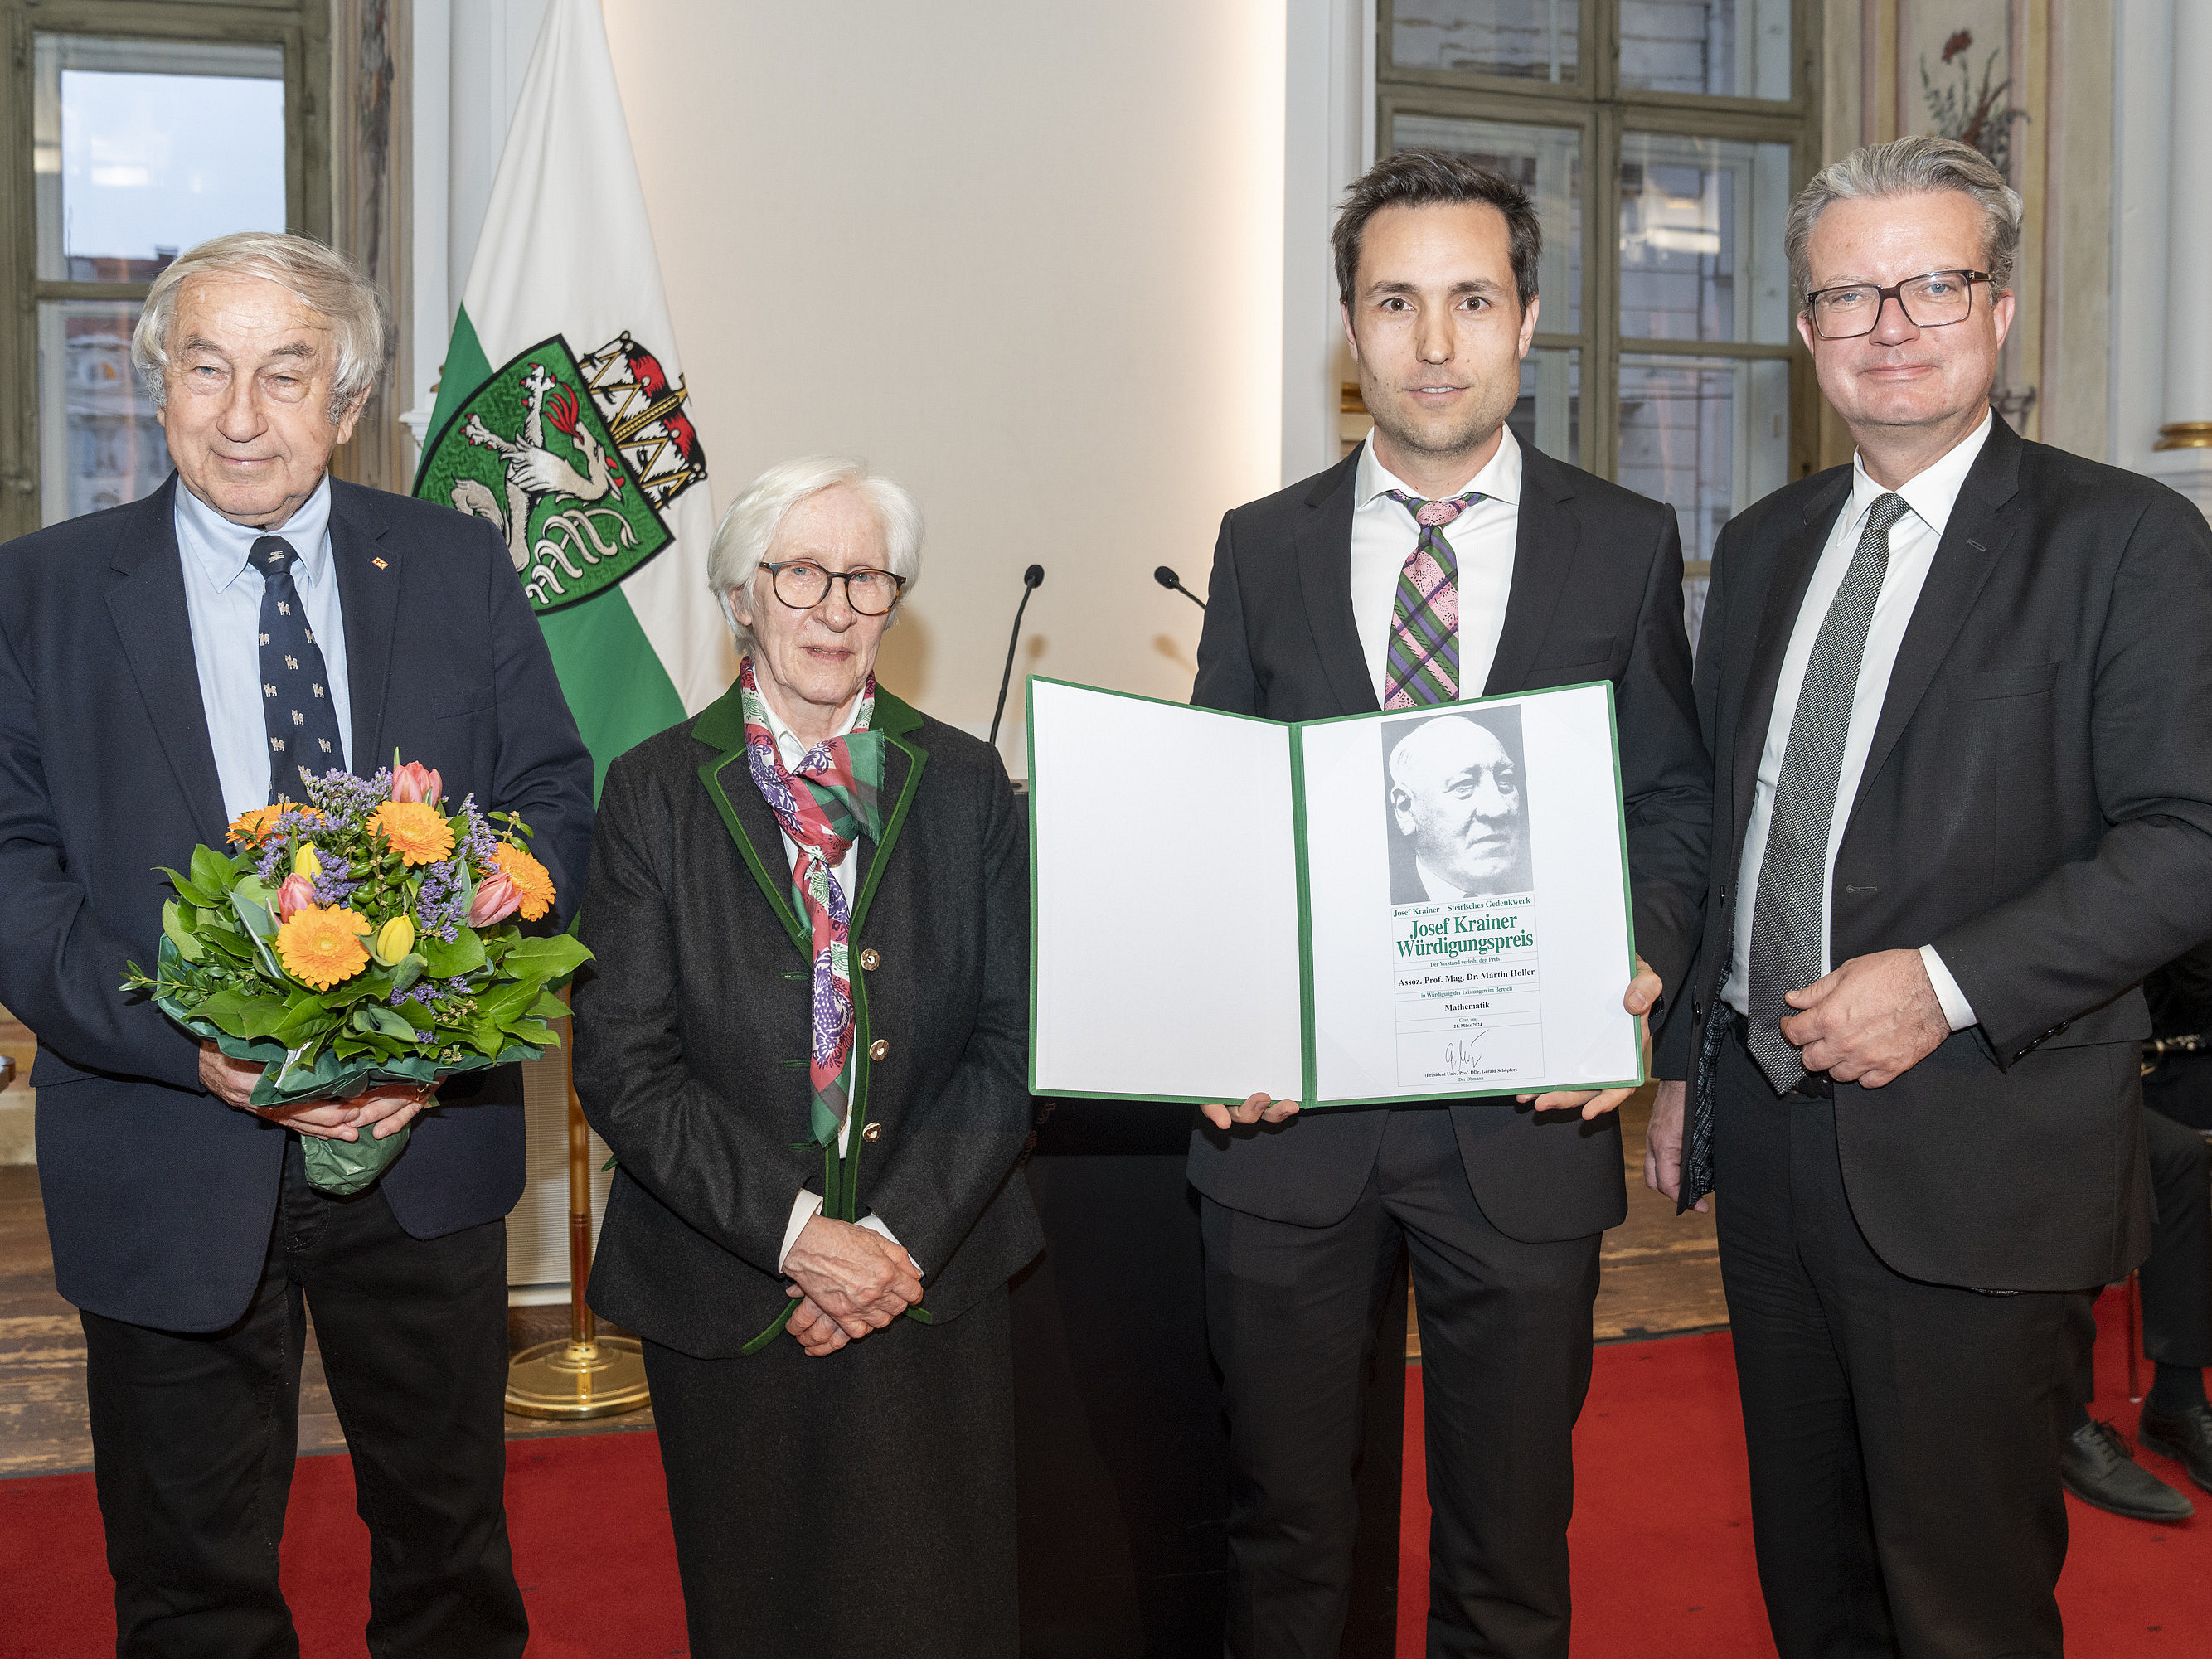 Verleihung des Josef-Krainer-Würdigungspreises an Martin Holler ©steiermark.at/binder